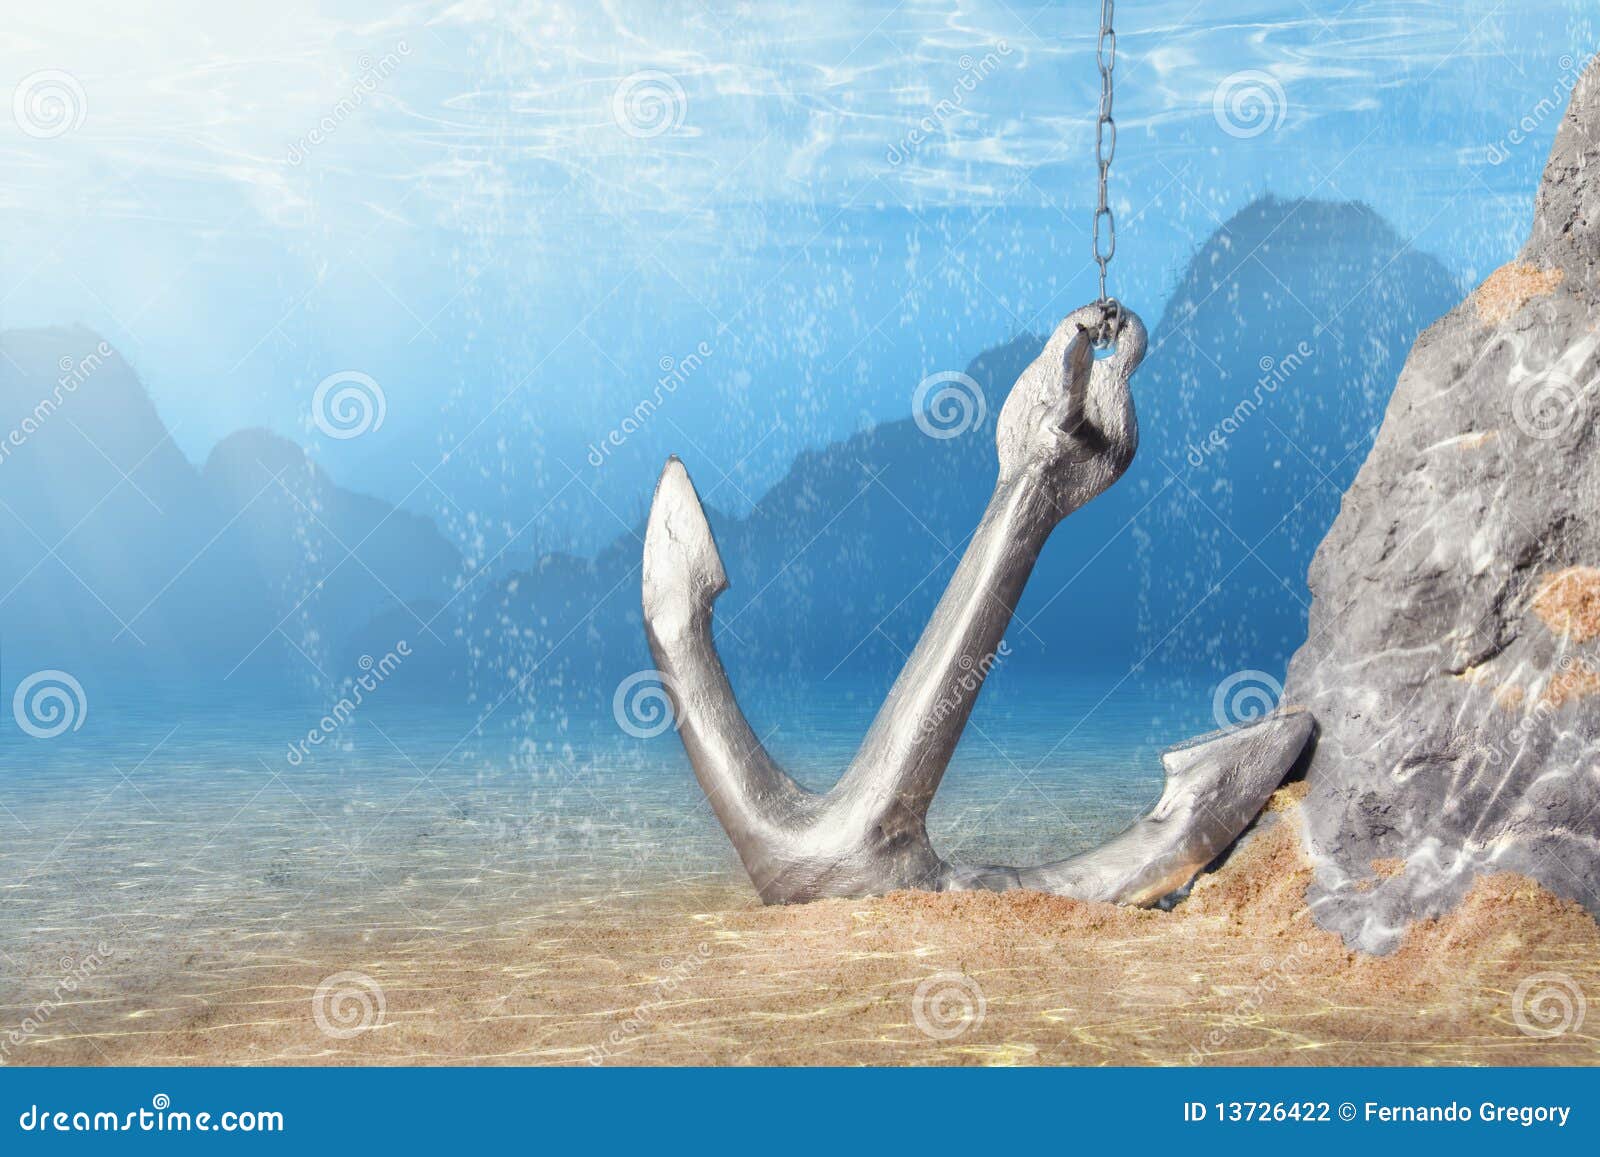 anchor underwater